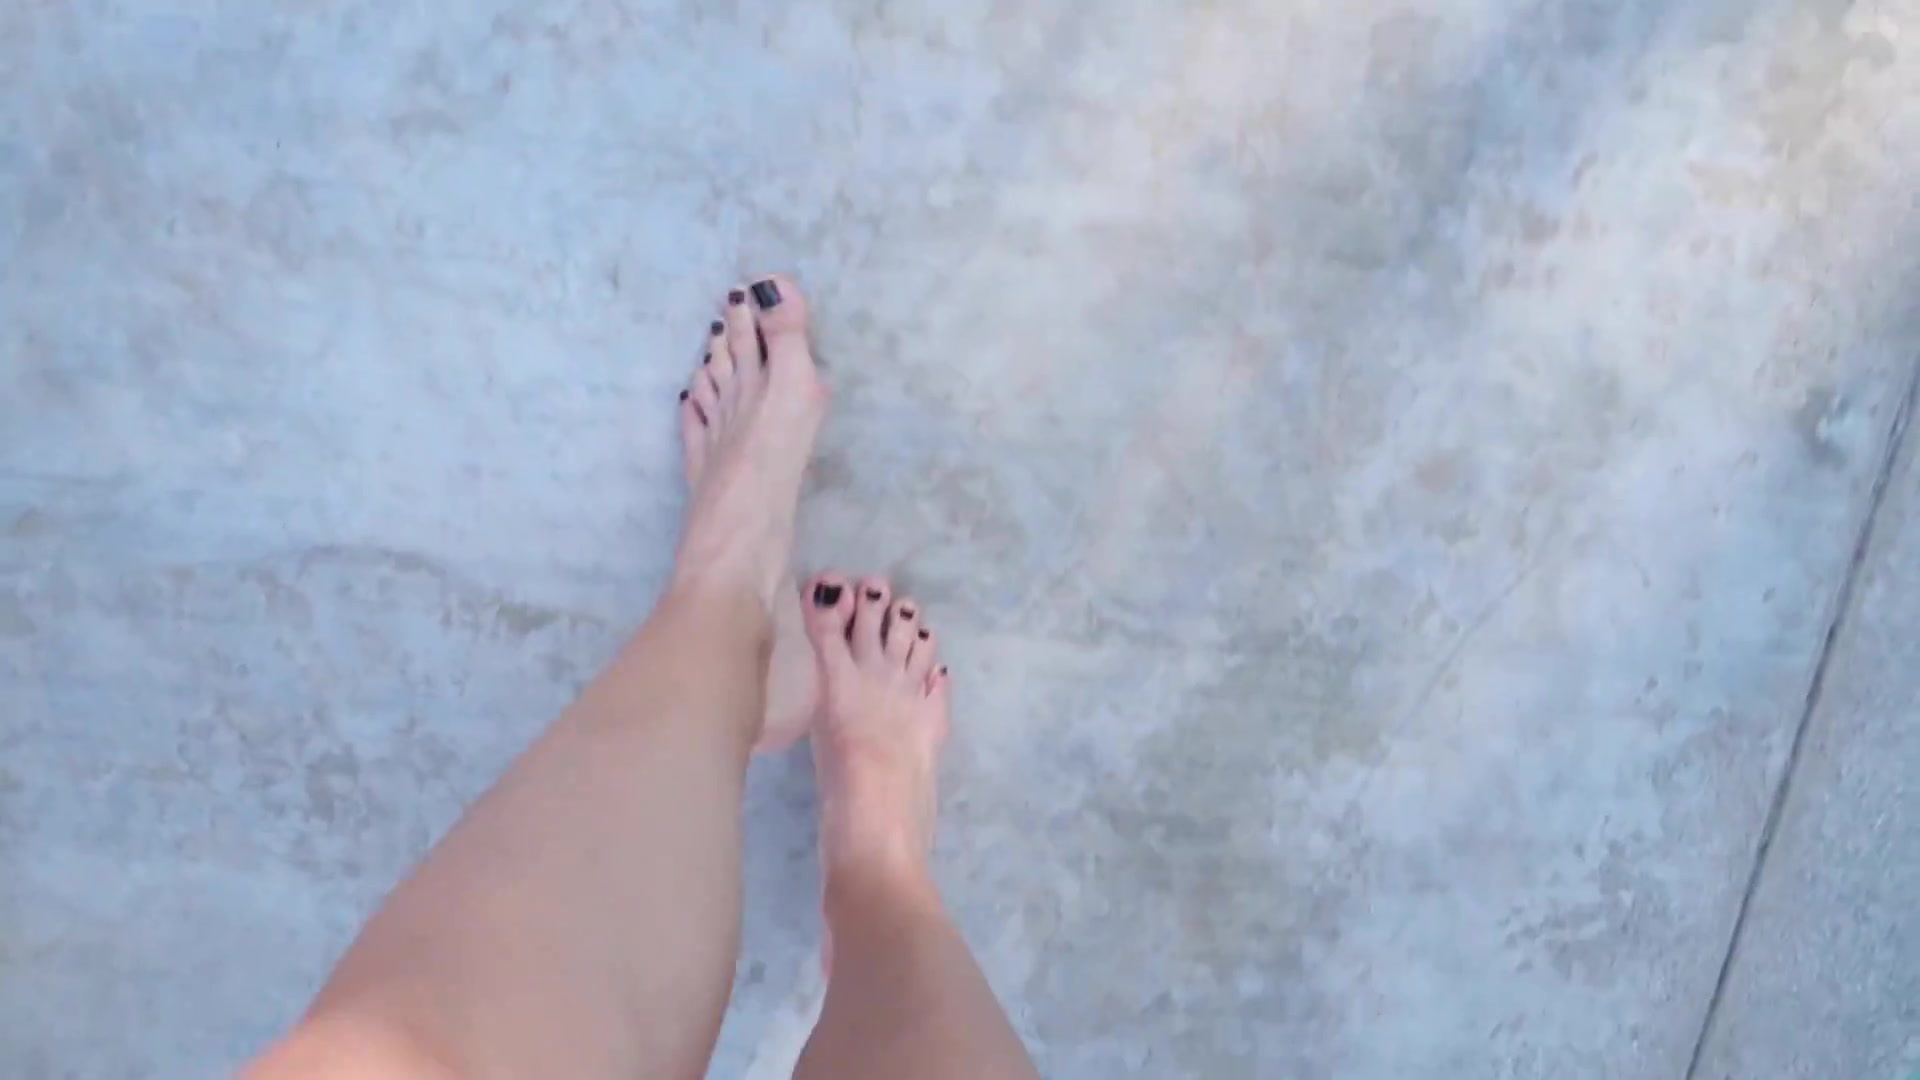 Jenna ezarik feet